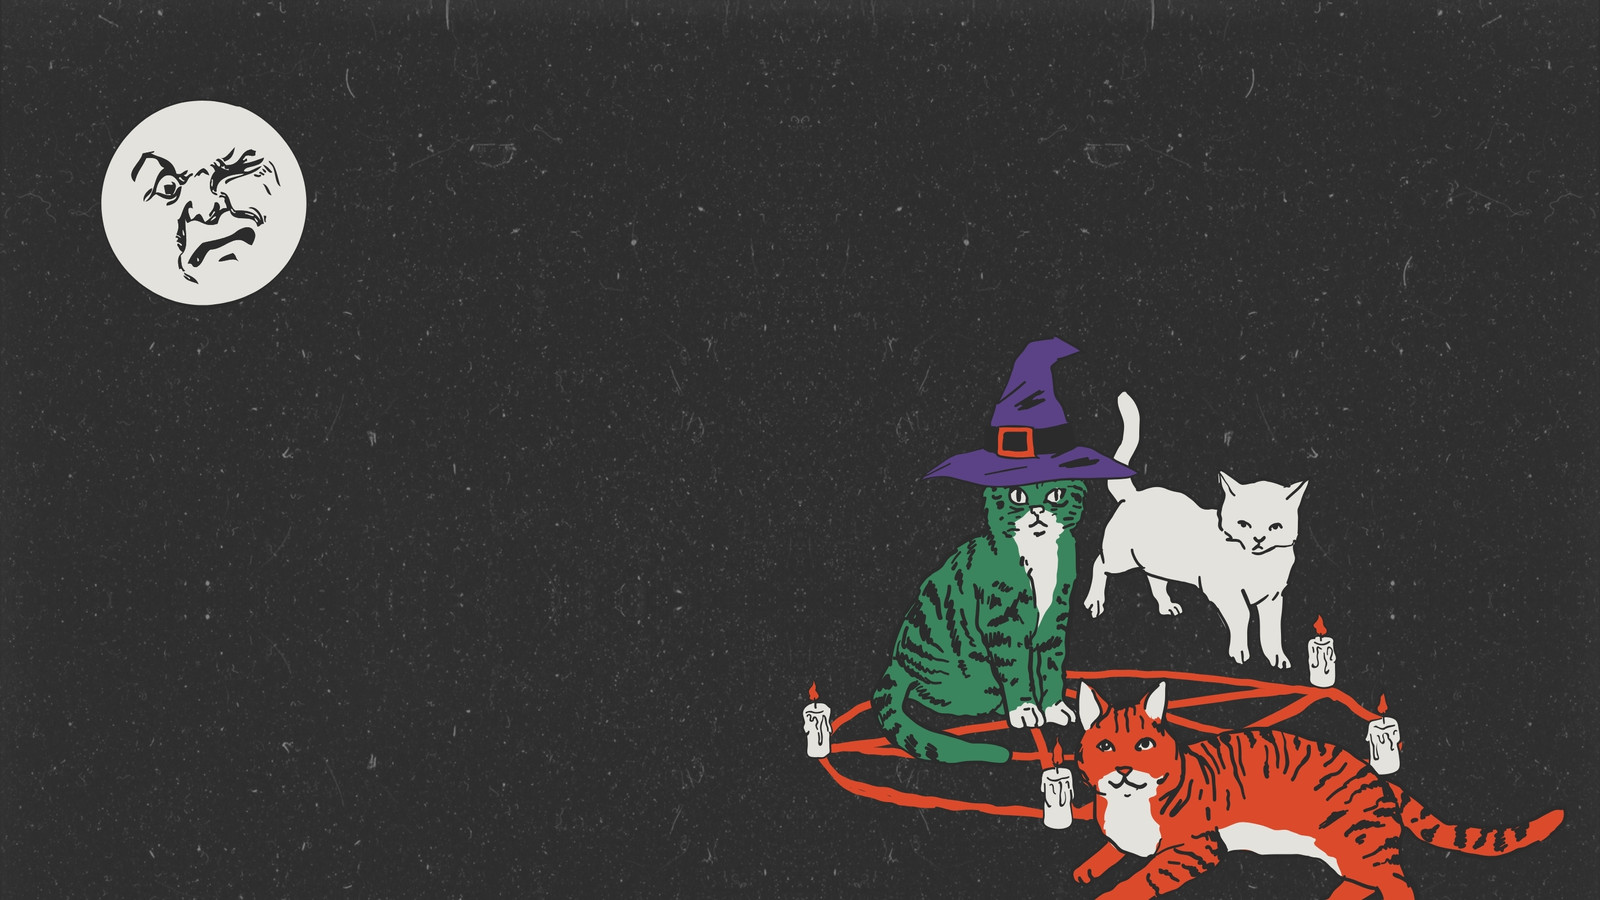 animated halloween desktop wallpaper